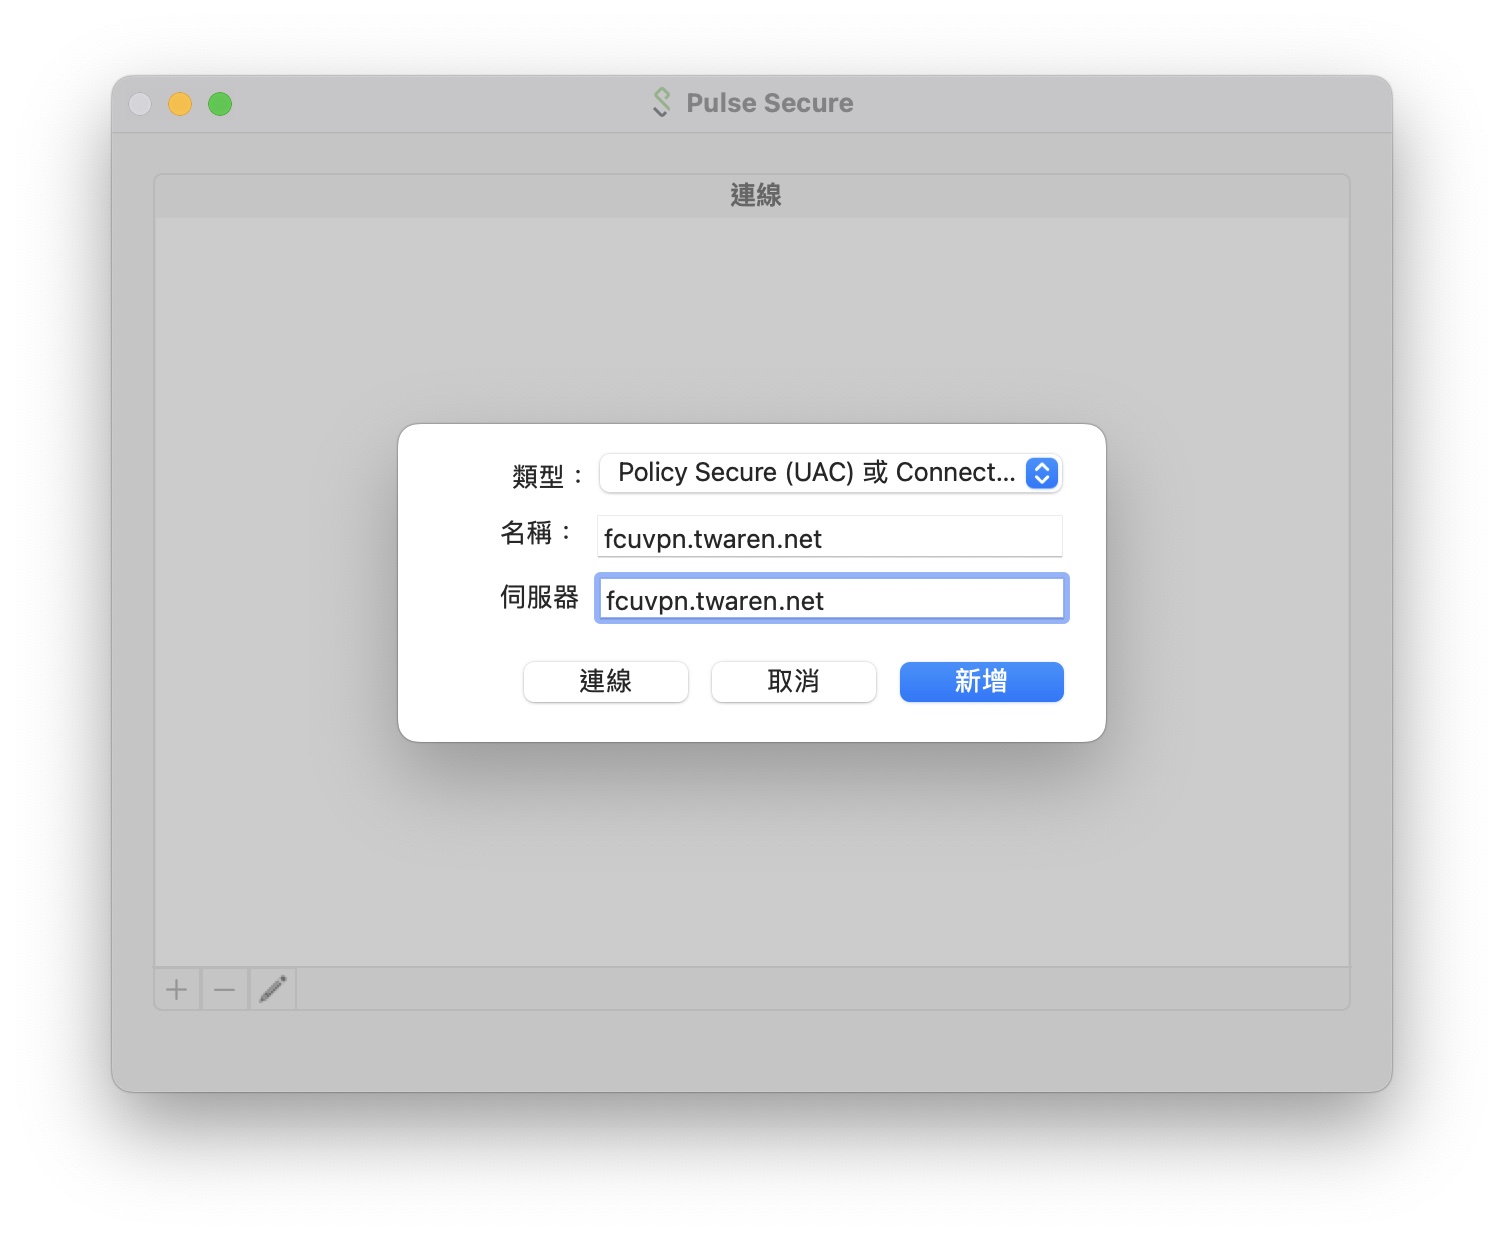 VPN Pulse Secure macOS Setup 03